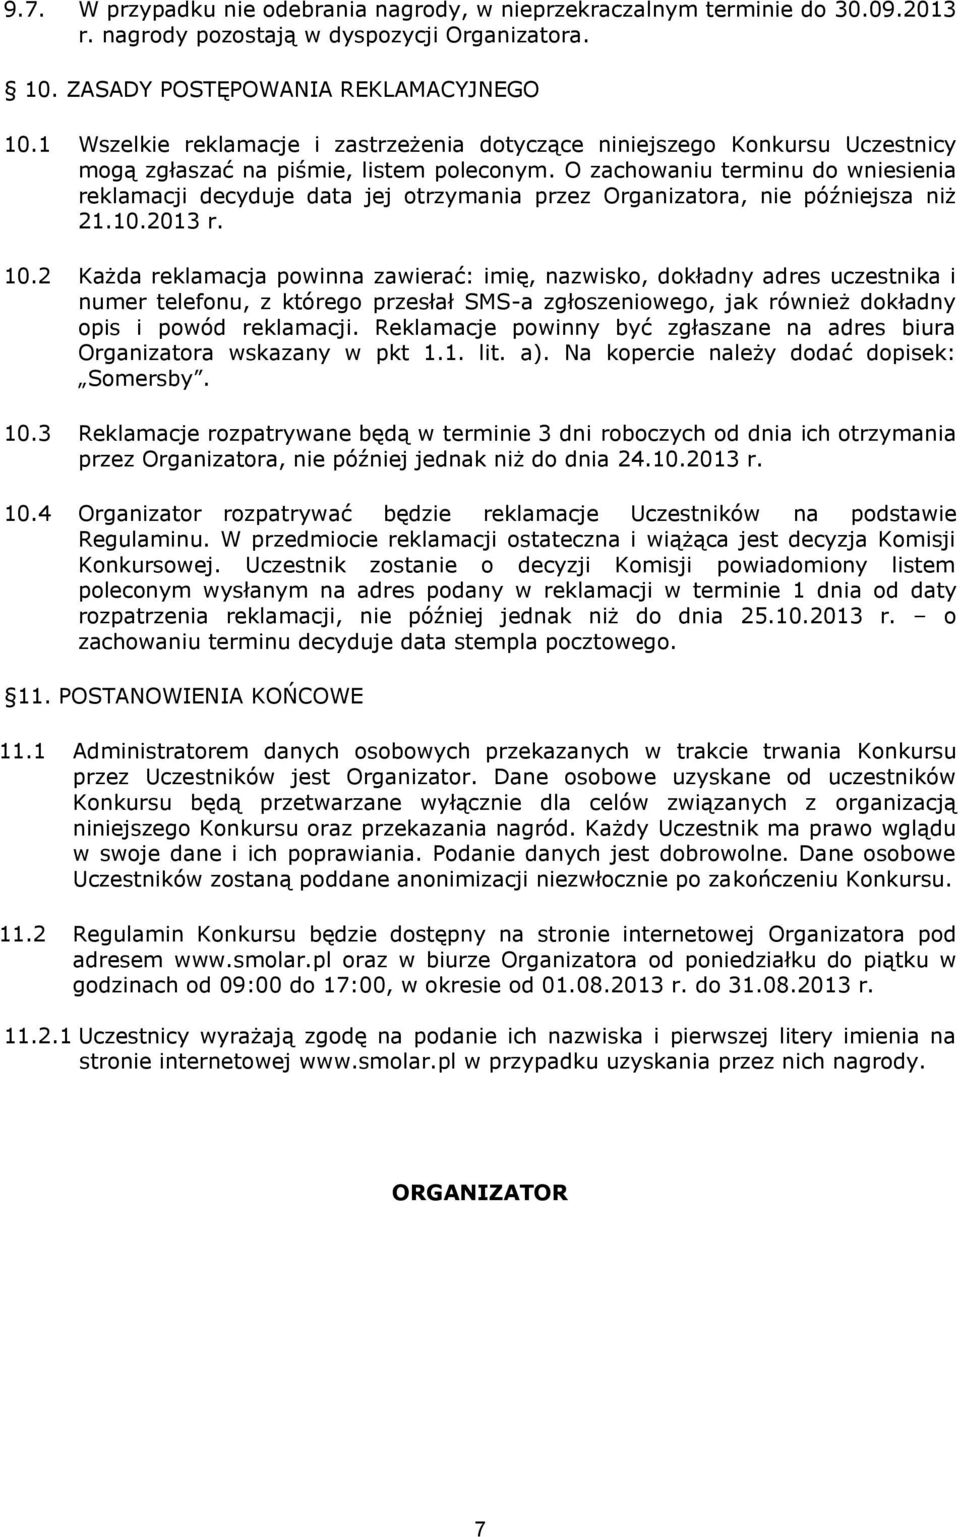 O zachowaniu terminu do wniesienia reklamacji decyduje data jej otrzymania przez Organizatora, nie późniejsza niż 21.10.2013 r. 10.